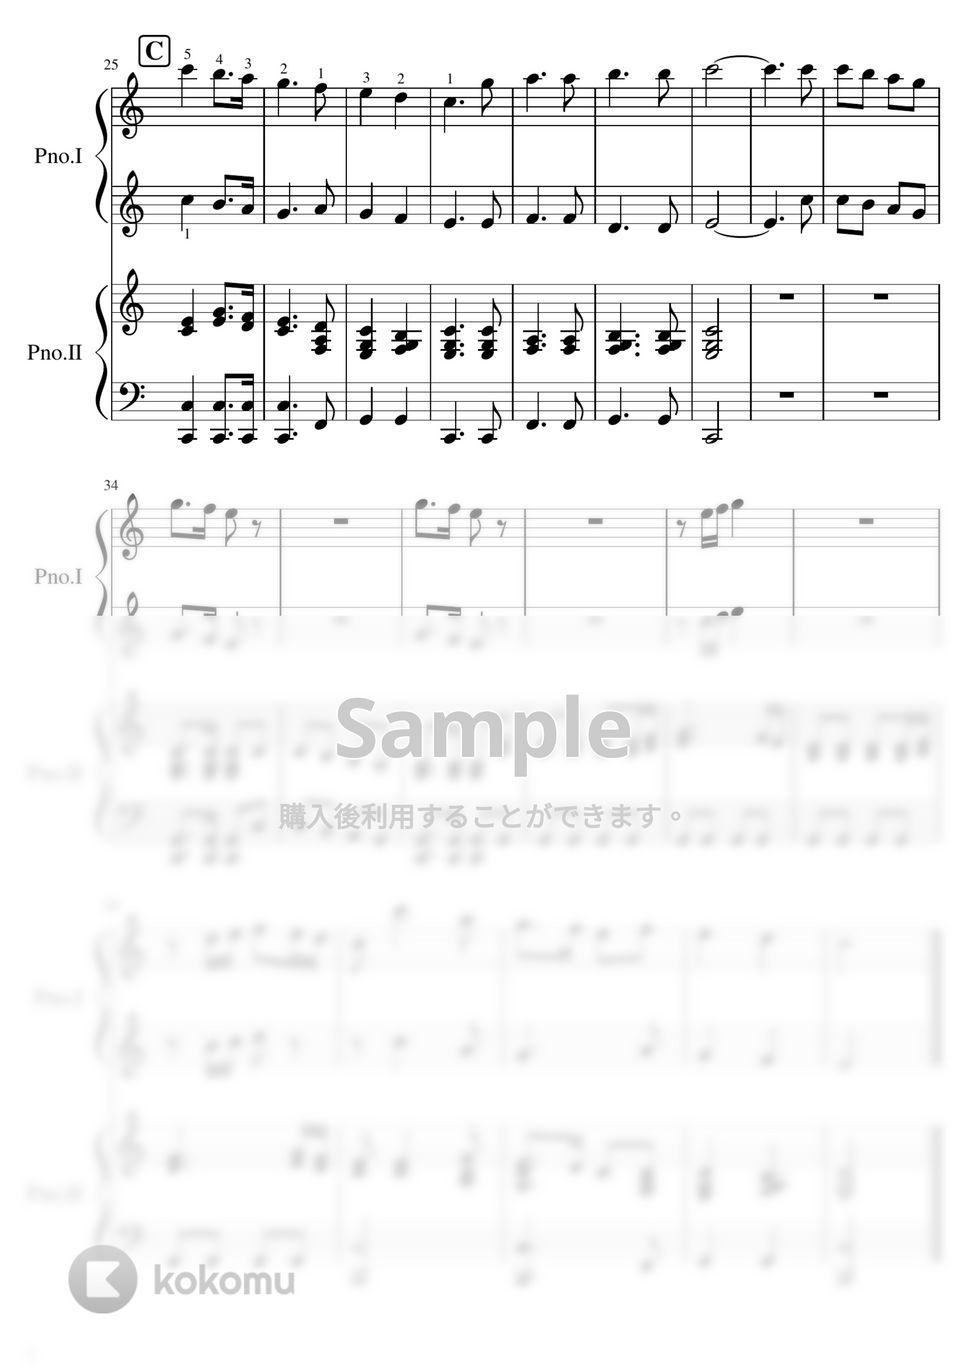 【ピアノ連弾】もろびとこぞりて (クリスマス,連弾) by ピアノのせんせいの楽譜集